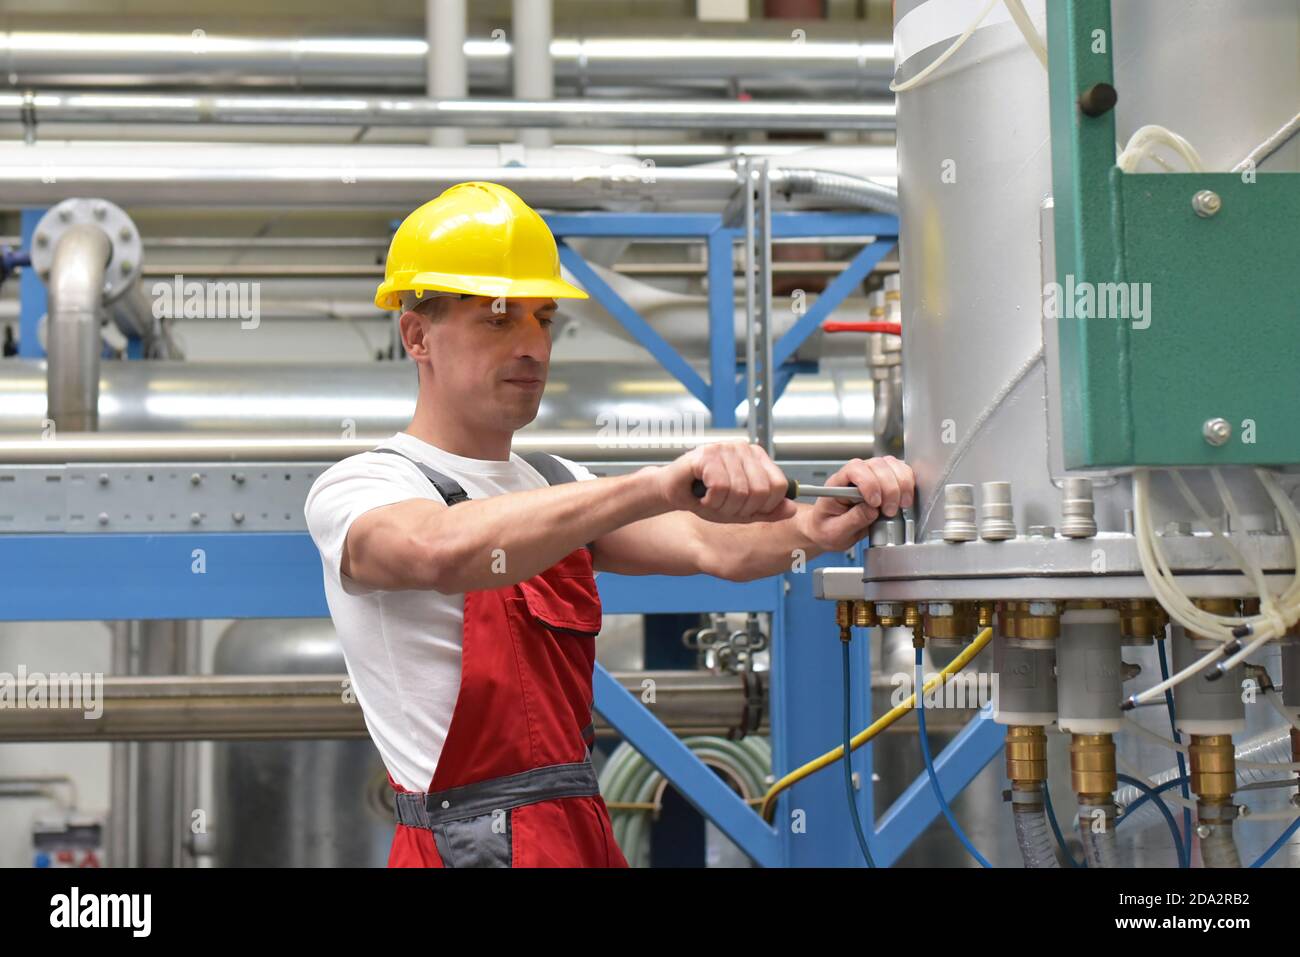 Mechanik reparieren einer Maschine in einem modernen Industriebetrieb - Beruf und Teamarbeit Stockfoto